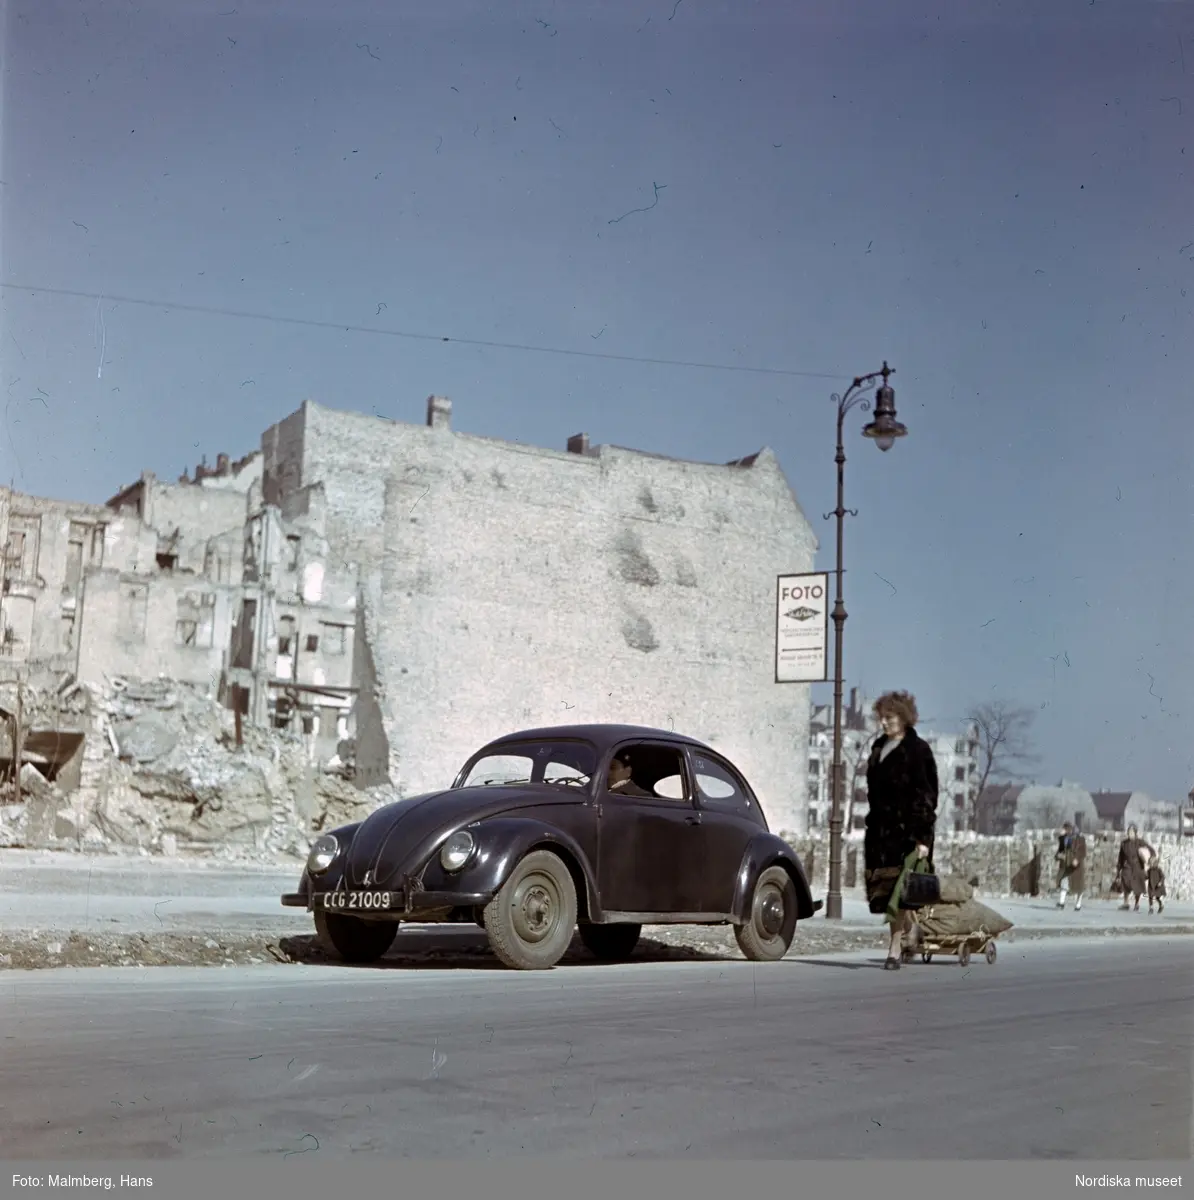 Berlin. På en gata sitter soldat ur de brittiska ockupationstrupperna i en Volkswagen, bredvid drar en kvinna på en kärra.